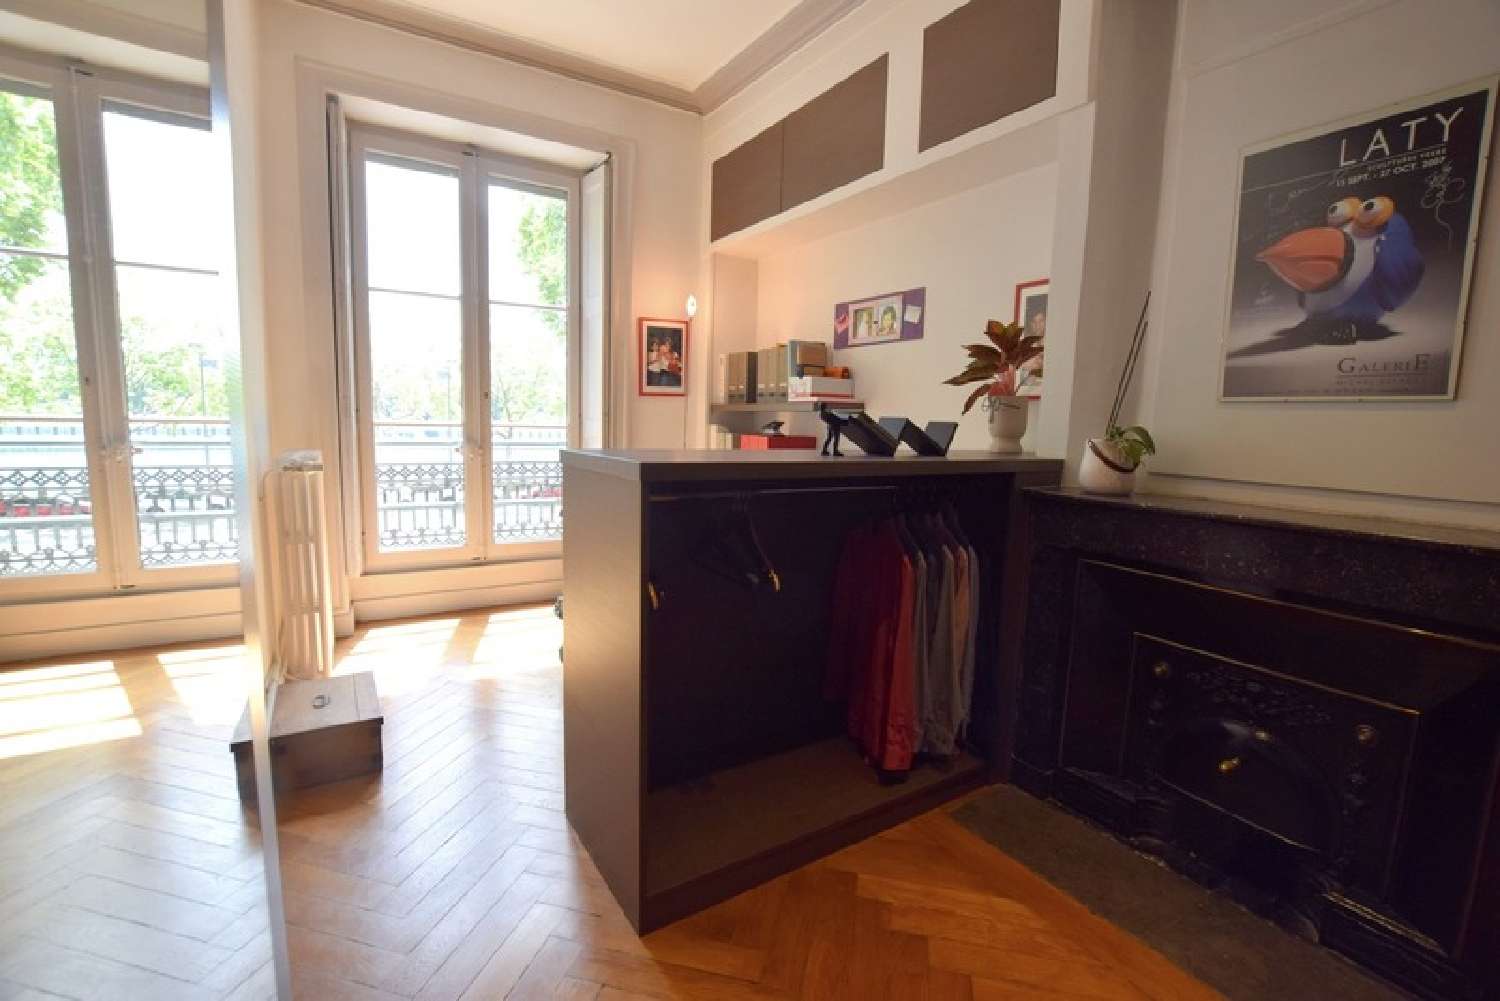  à vendre appartement Lyon 2e Arrondissement Rhône 6